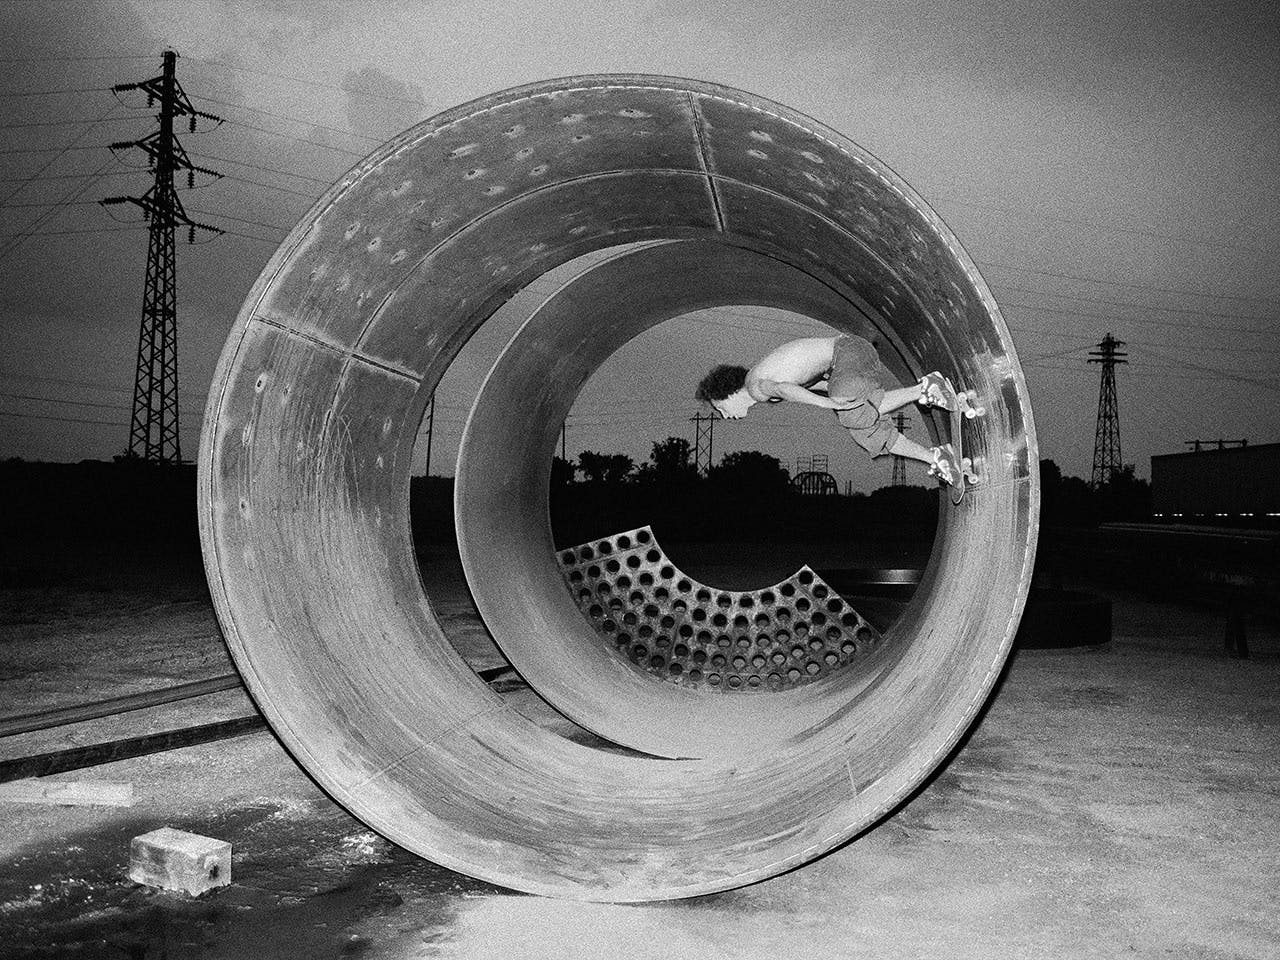 ‘Mike M. skateboardde een full pipe, Davenport, Iowa’ (1998). Fotograaf Templeton reisde jaren als skater door de VS.